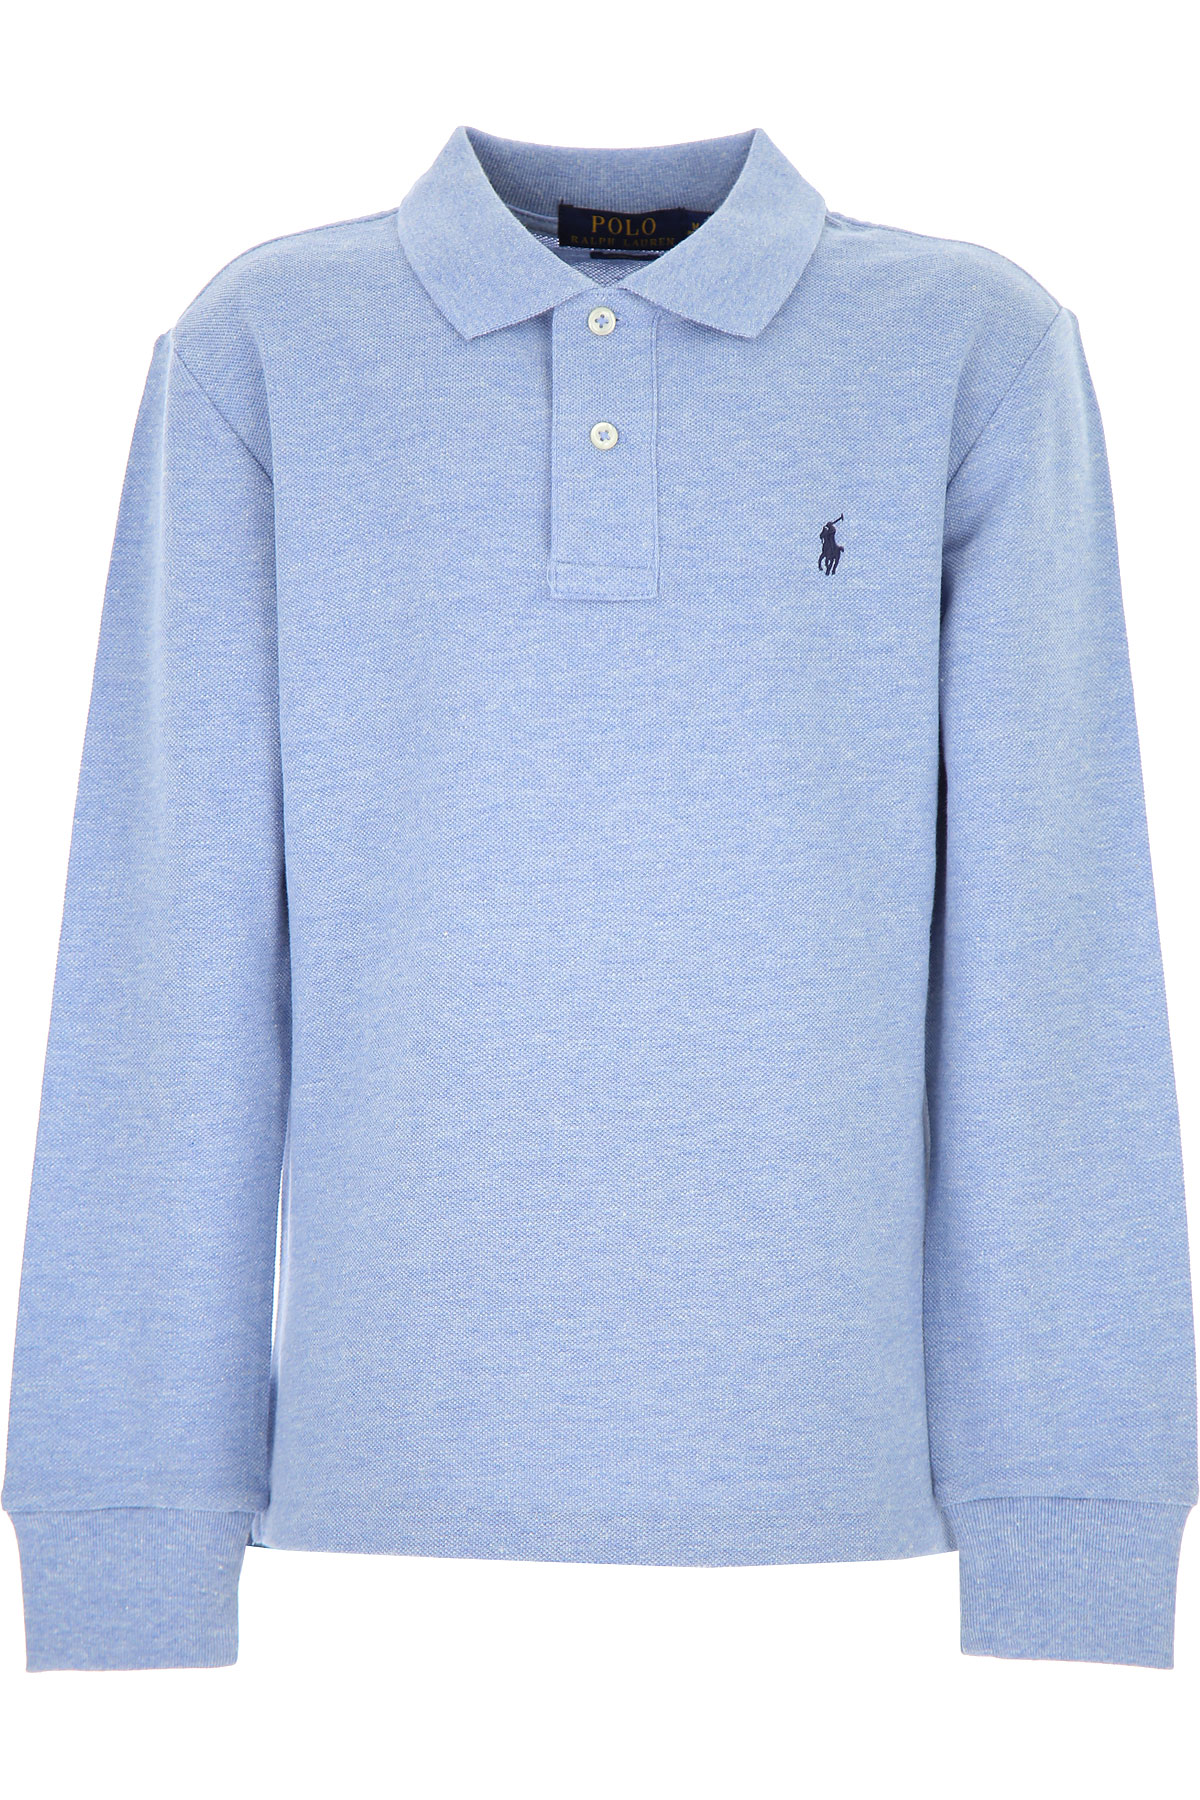 Ralph Lauren Kinder Polohemd für Jungen Günstig im Sale, Blasses Blau, Baumwolle, 2017, 2Y 4Y 5Y 6Y L M S XL